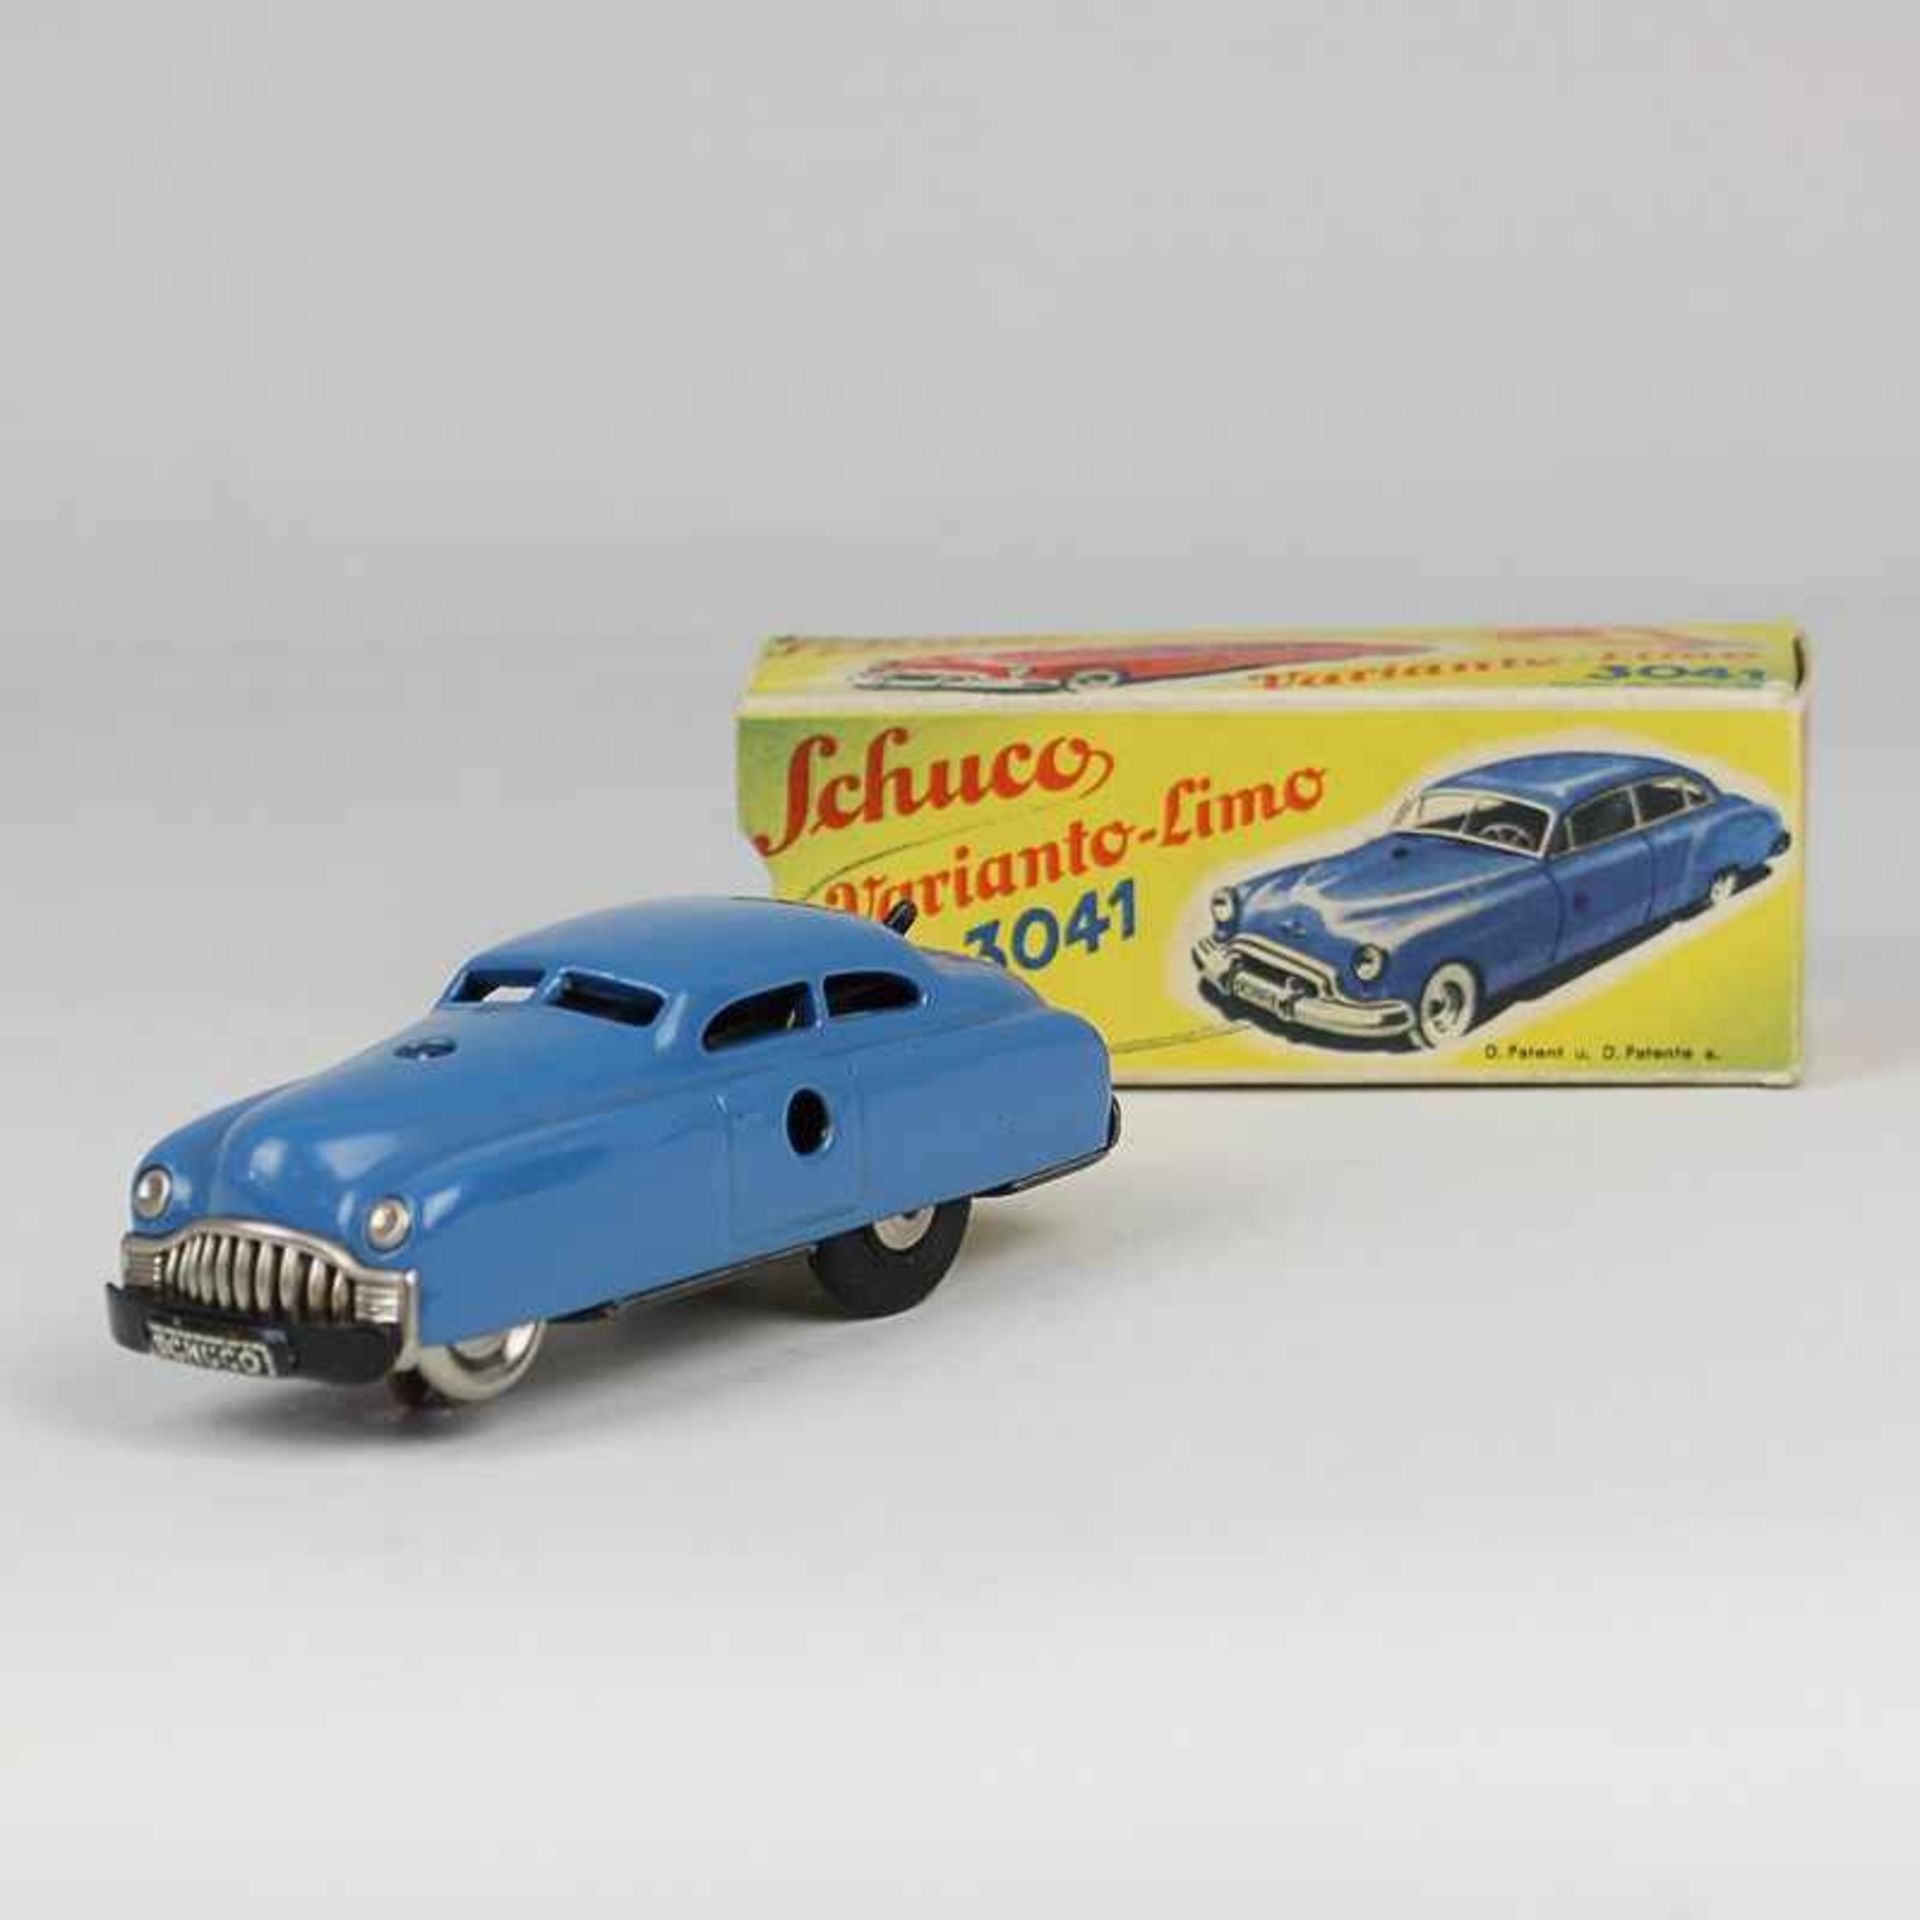 Schuco - Blechspielzeug Varianto-Limo 3041, um 1951/65, blaue Limousine, Uhrwerk fkt.tüchtig, 3